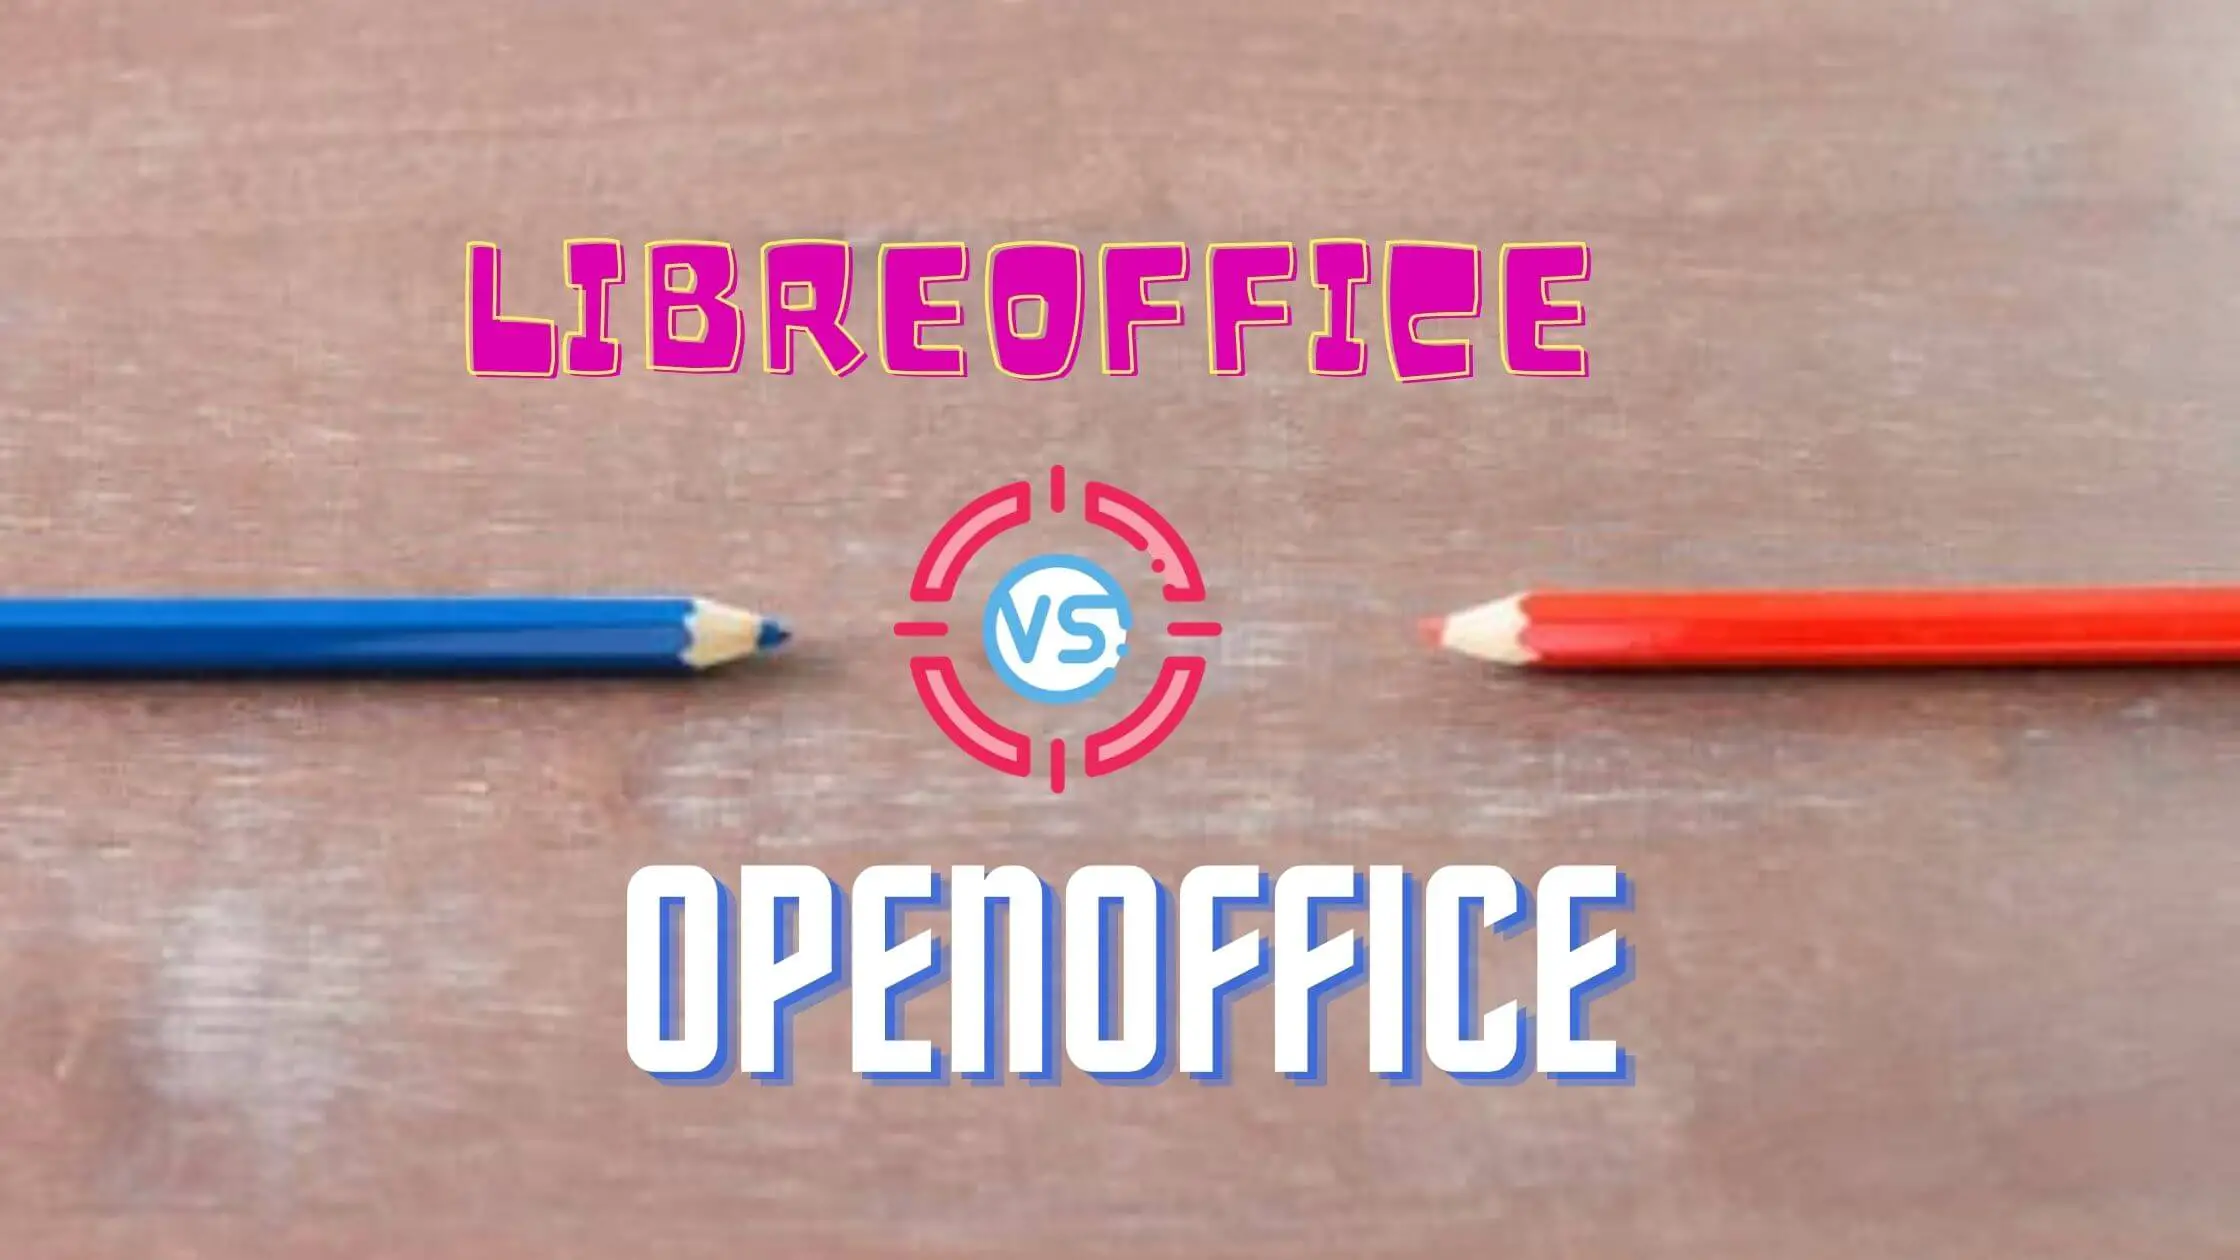 openoffice vs libreoffice comparison